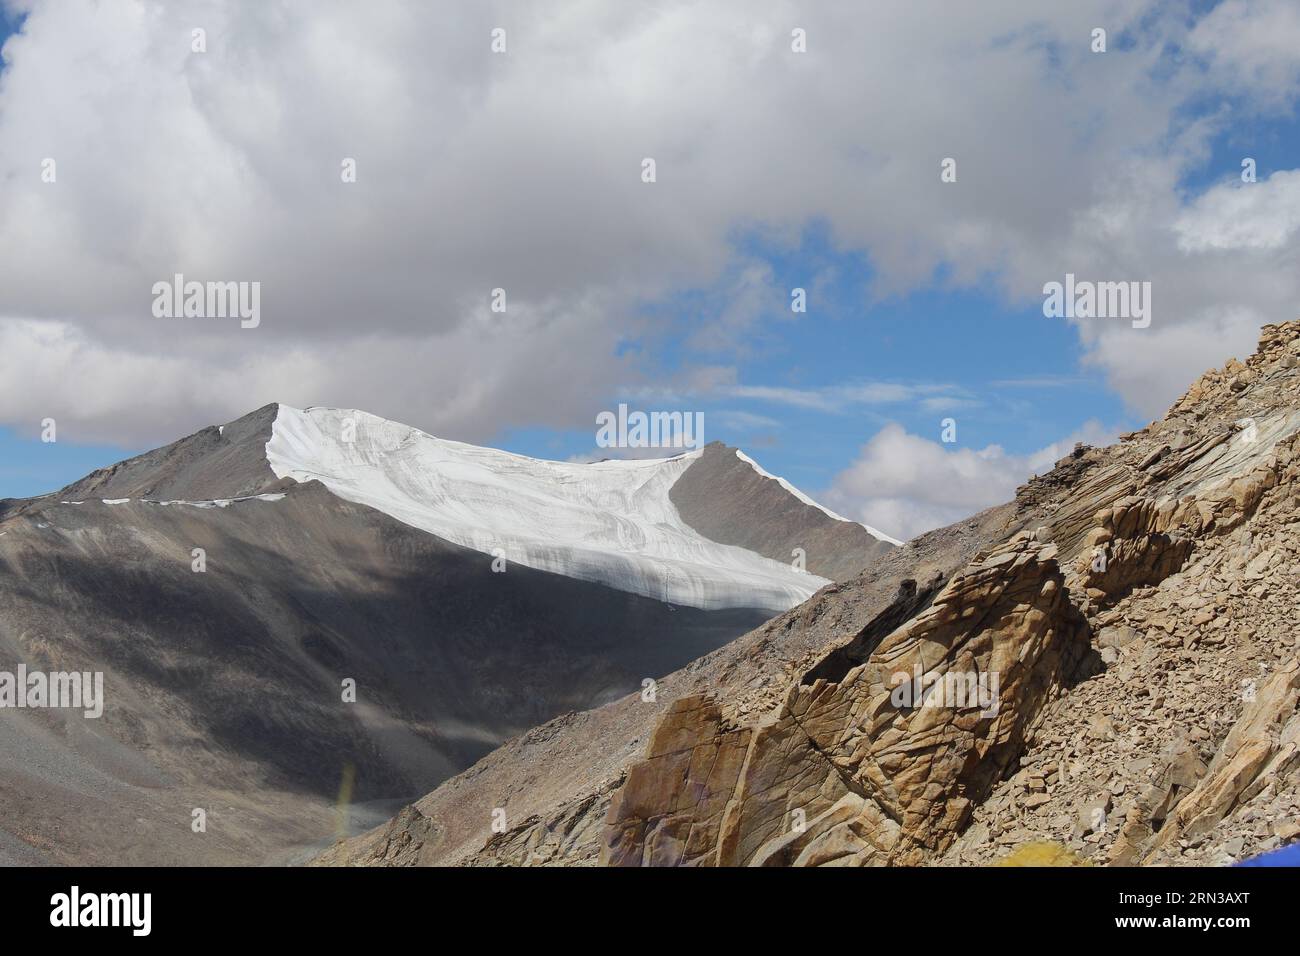 Fesselnder Ridge in Wilderness: Majestätische Bergkette, umgeben von Himmel und Wolken. Stockfoto